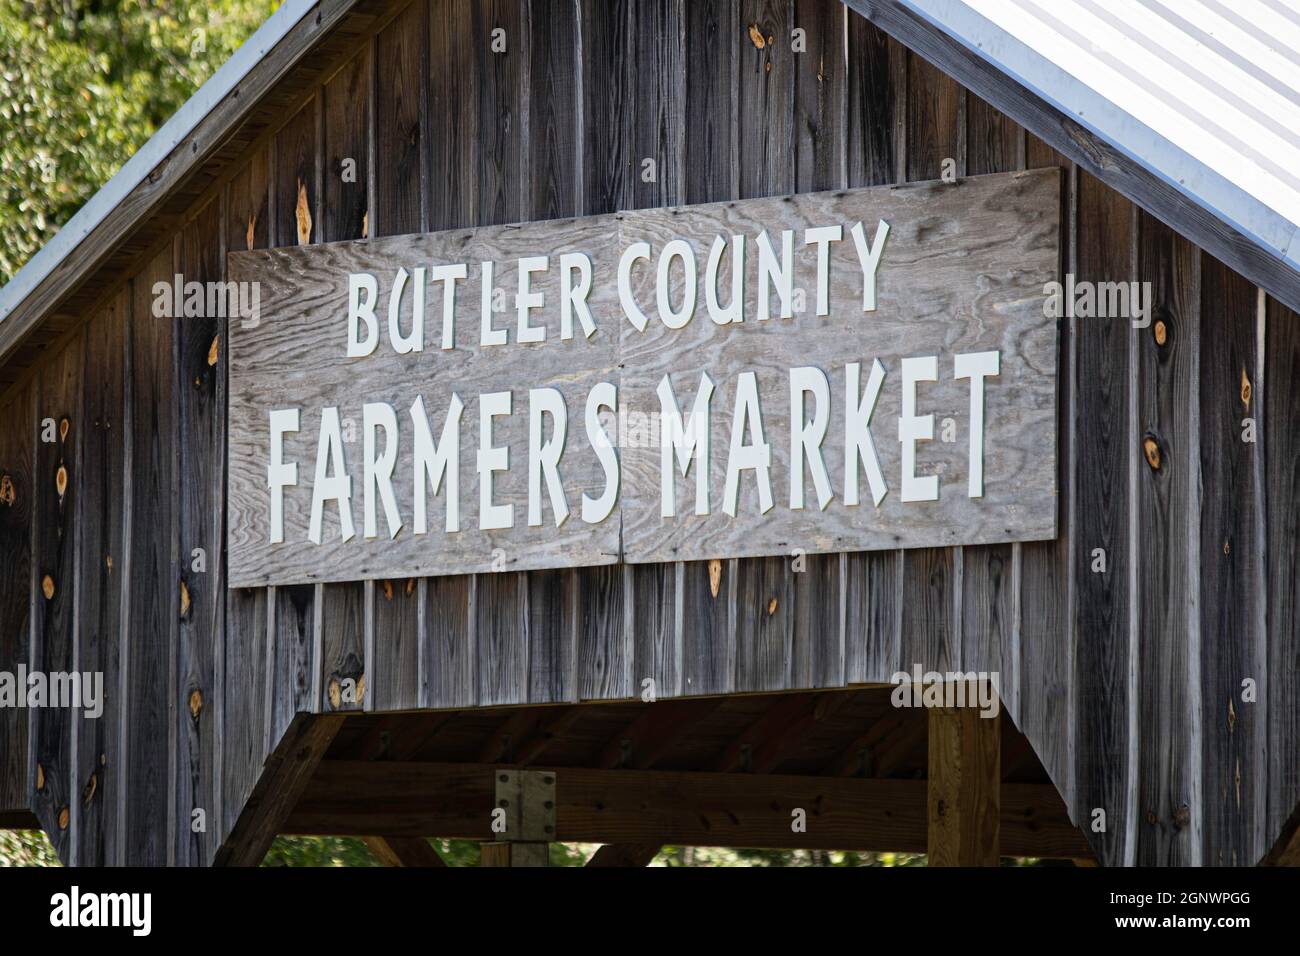 Nahaufnahme des Butler County Farmers Market-Schildes an einem Veranstaltungsort im Freien. Stockfoto